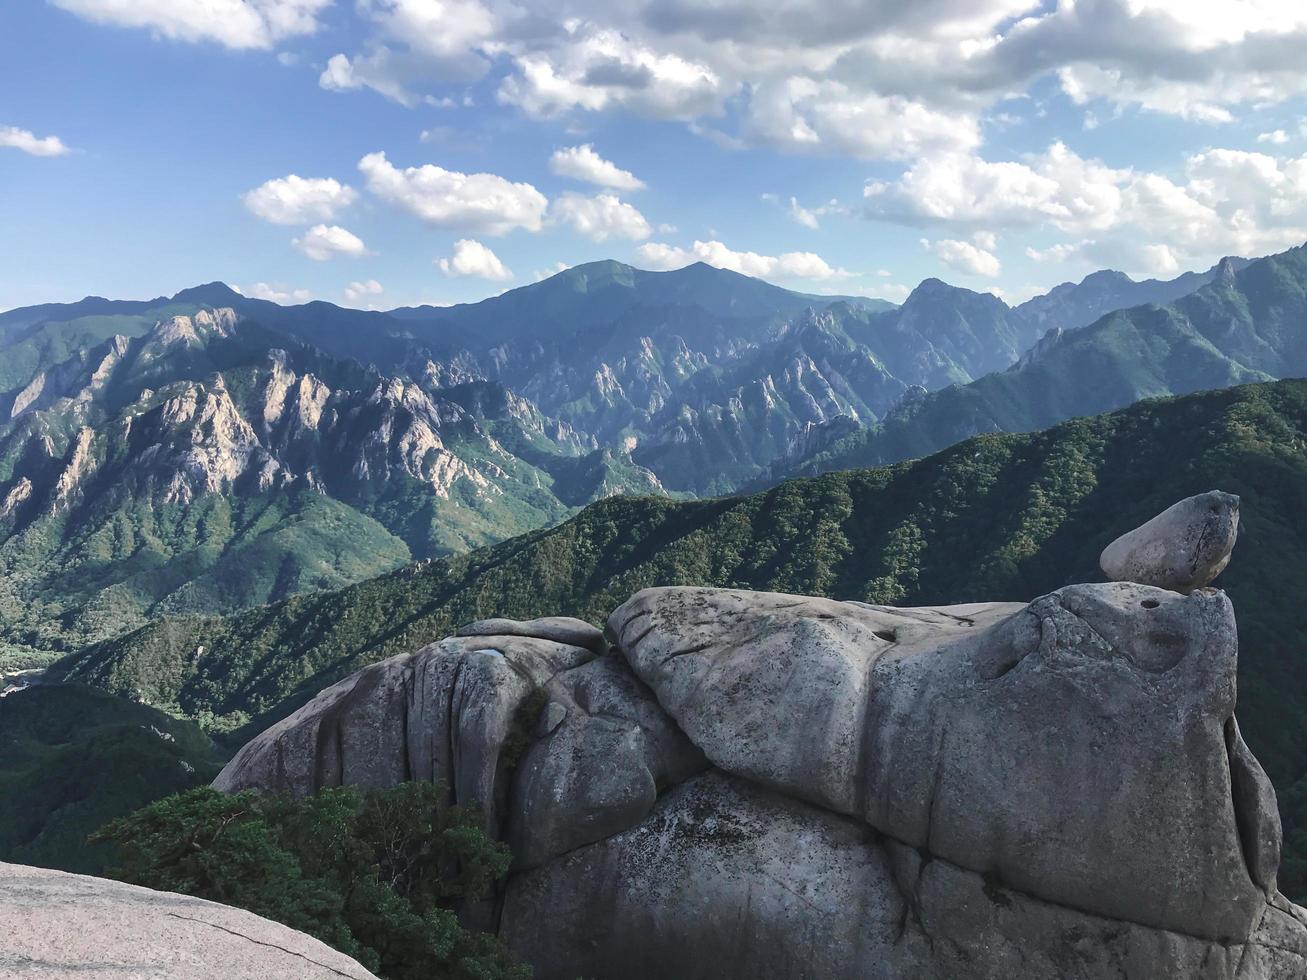 grote rotsen bij het nationale park van Seoraksan, Zuid-Korea foto